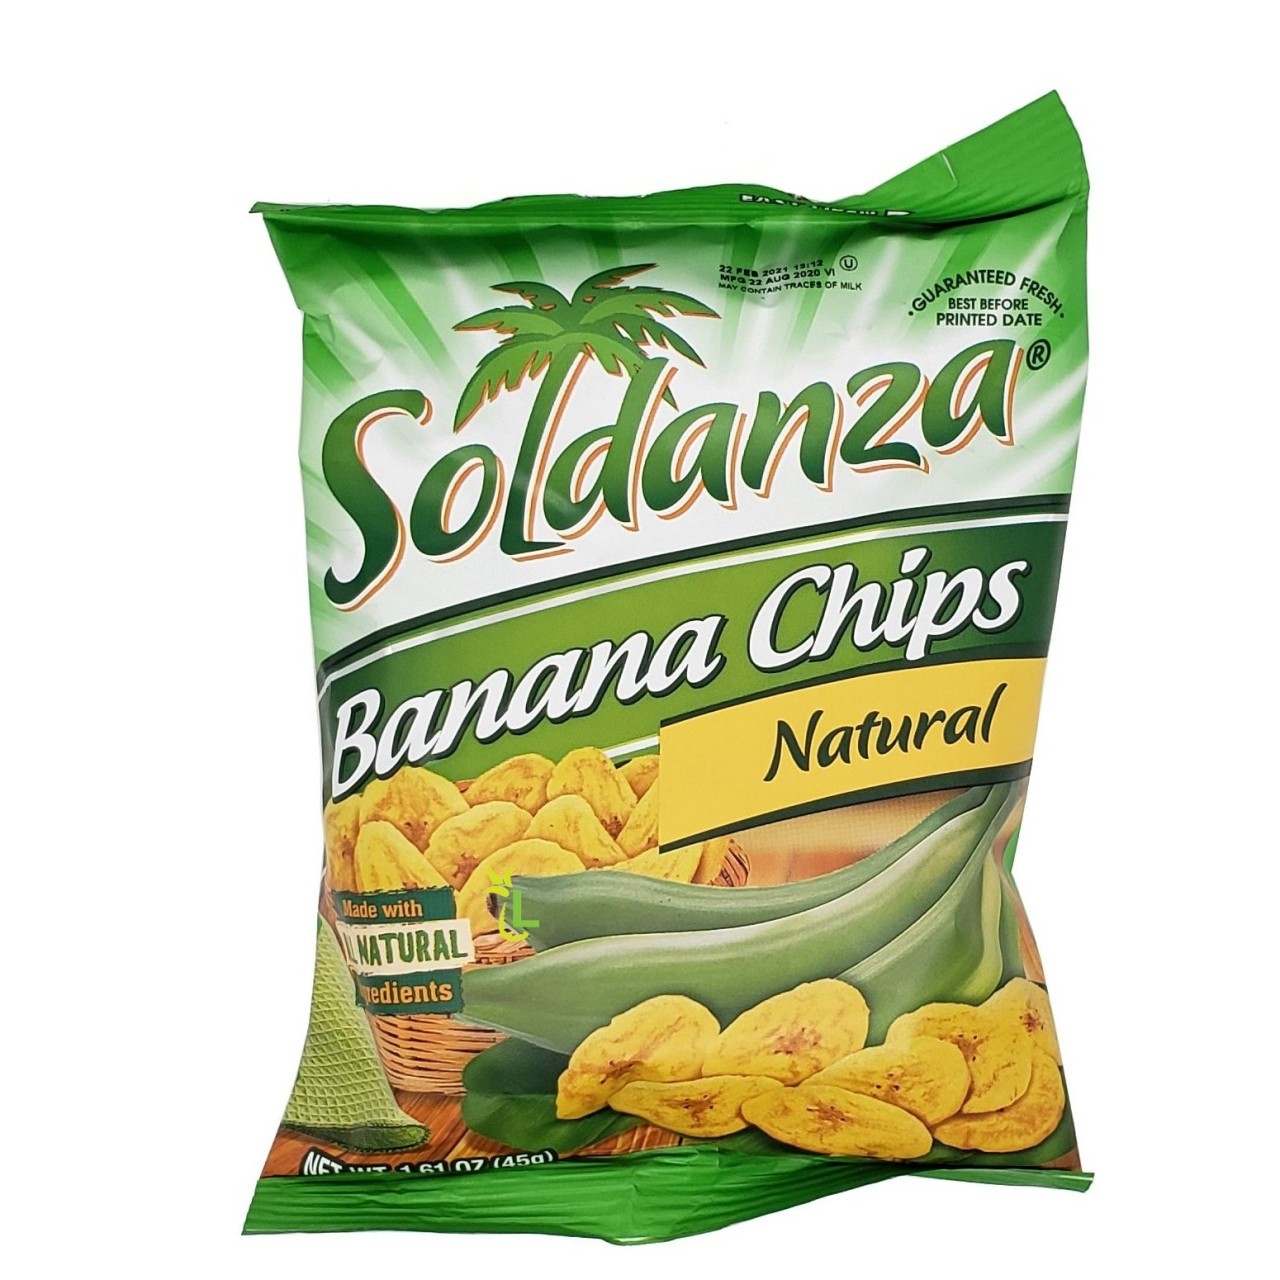 HOLIDAY SOLDANZA BANANA CHIPS 45G